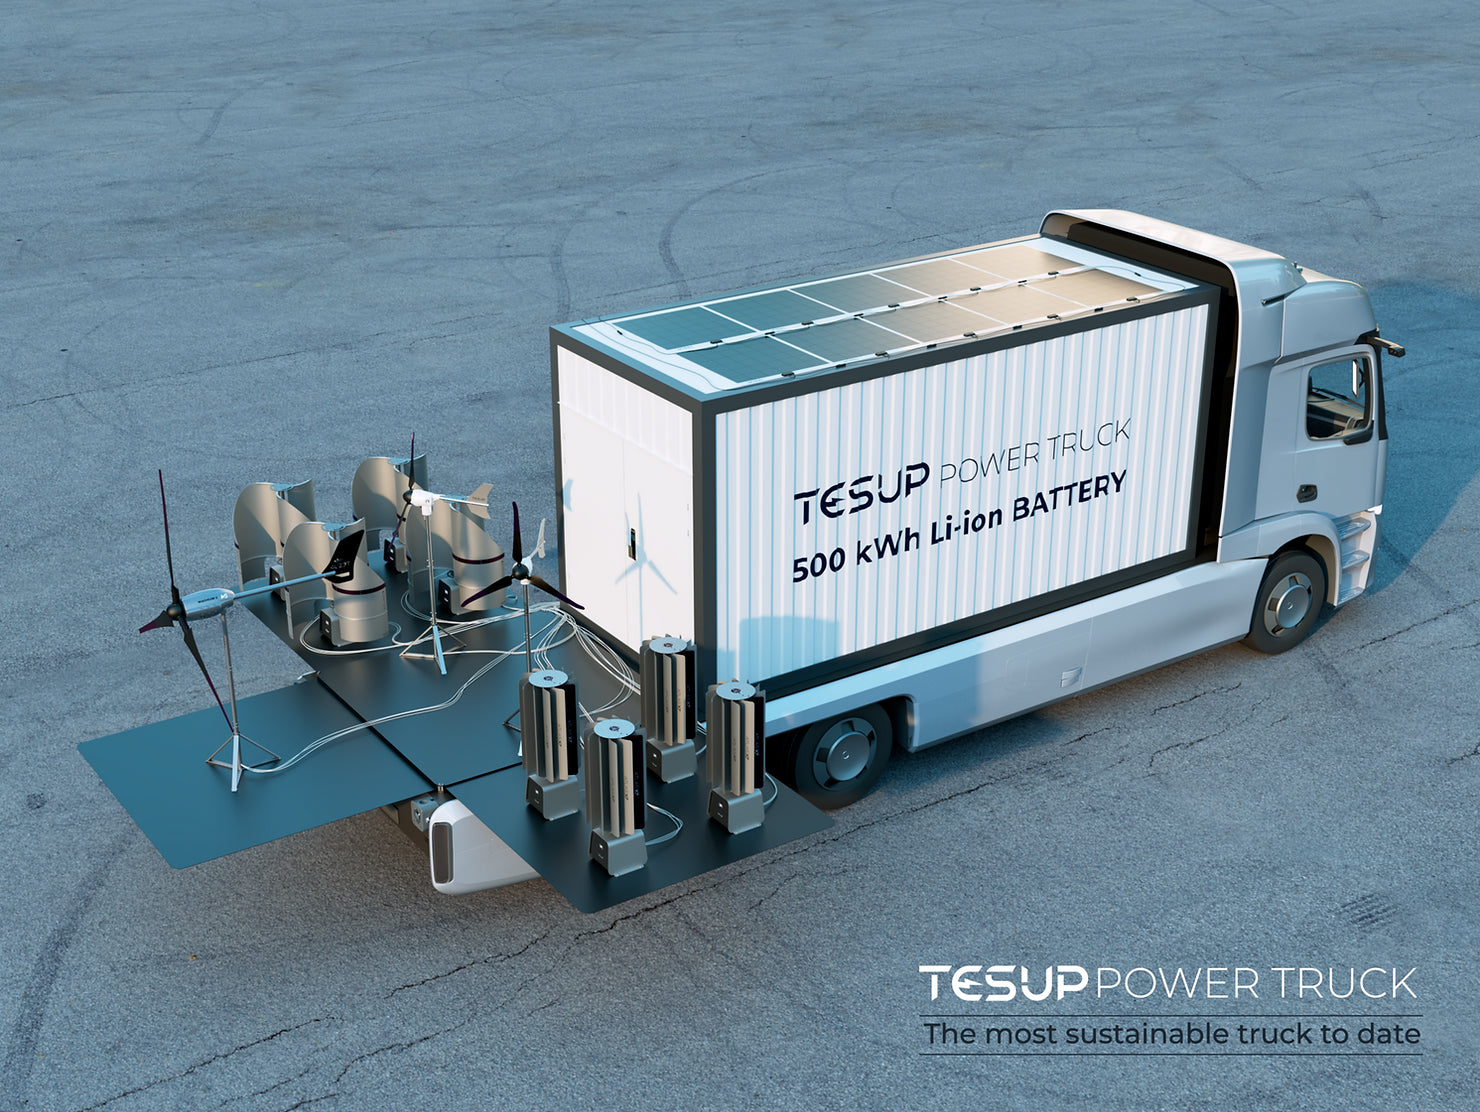 Wir stellen den bisher nachhaltigsten Truck vor: TESUP Power Truck!